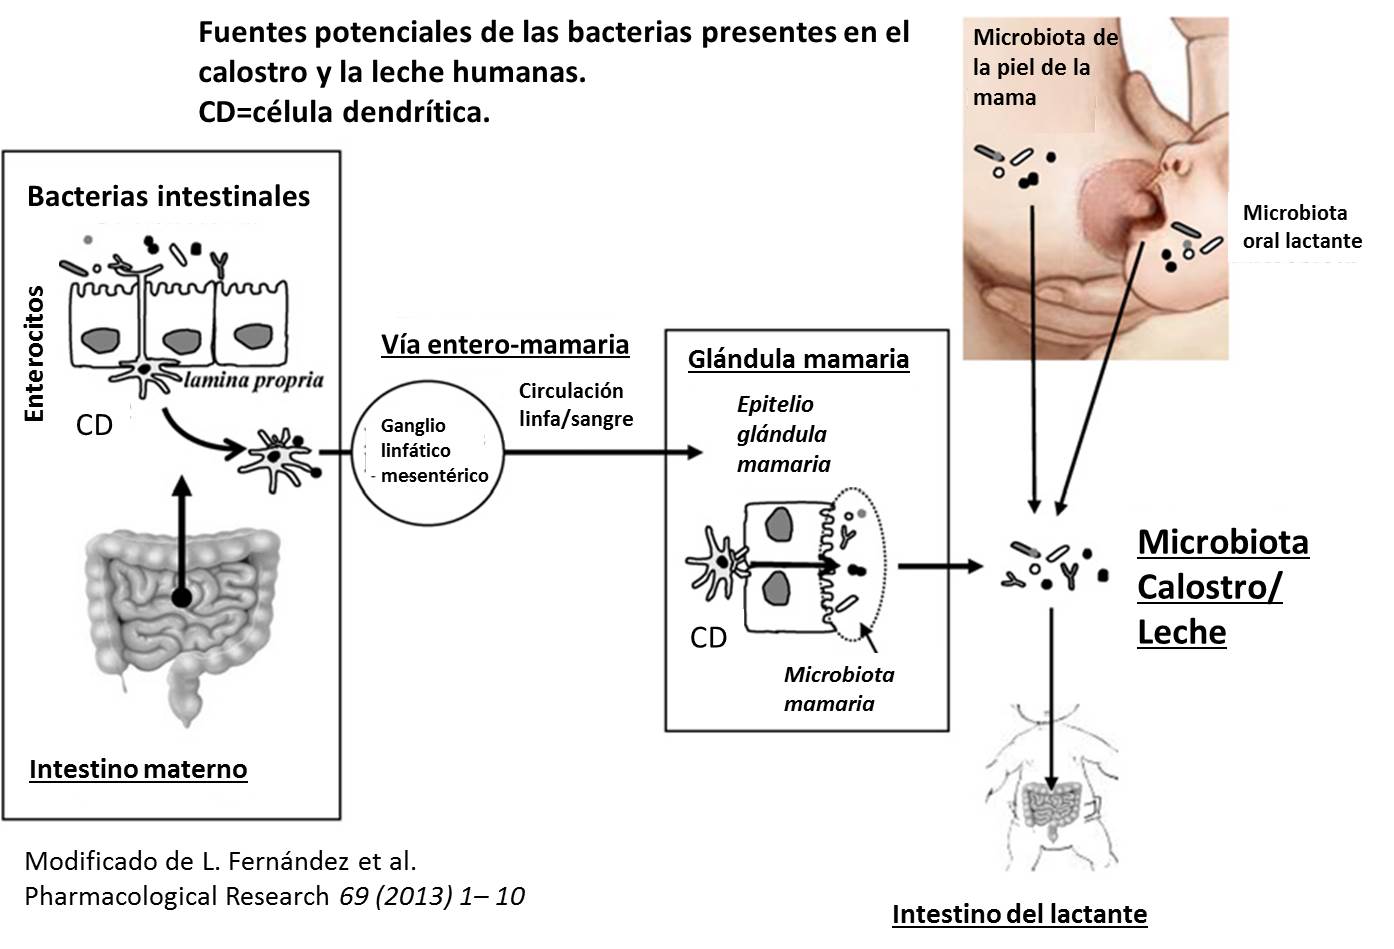 fuentes-potenciales-de-las-bacterias-presentes-en-el-calostro-y-la-leche-humanas.jpg